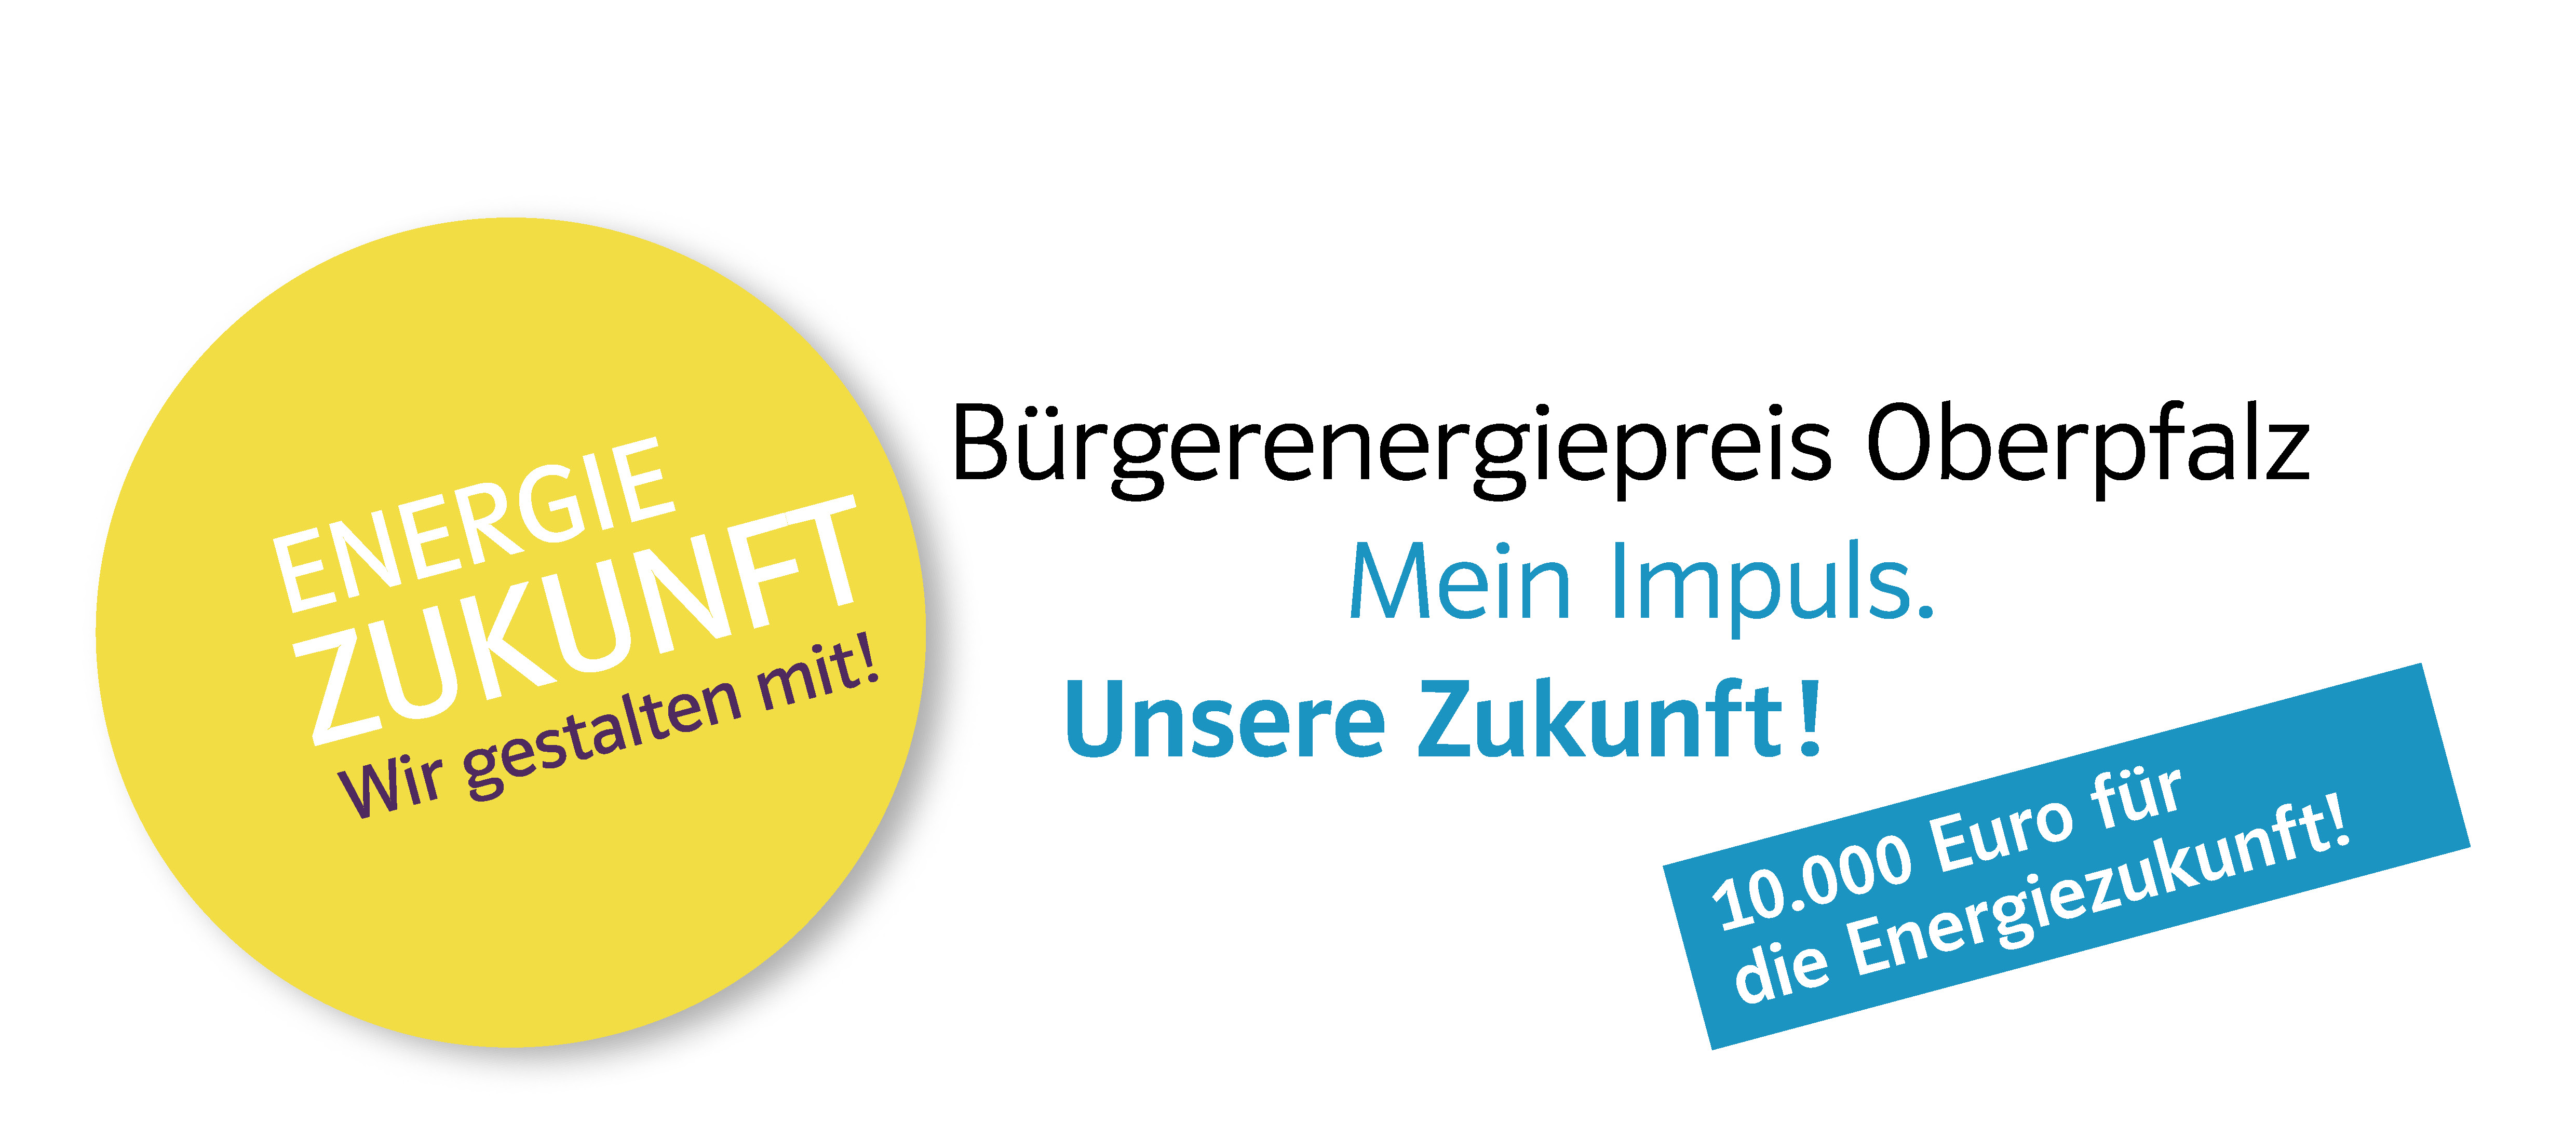 24.11.2023 - Bürgerenergiepreis Oberpfalz - 10.000 Euro Preisgeld